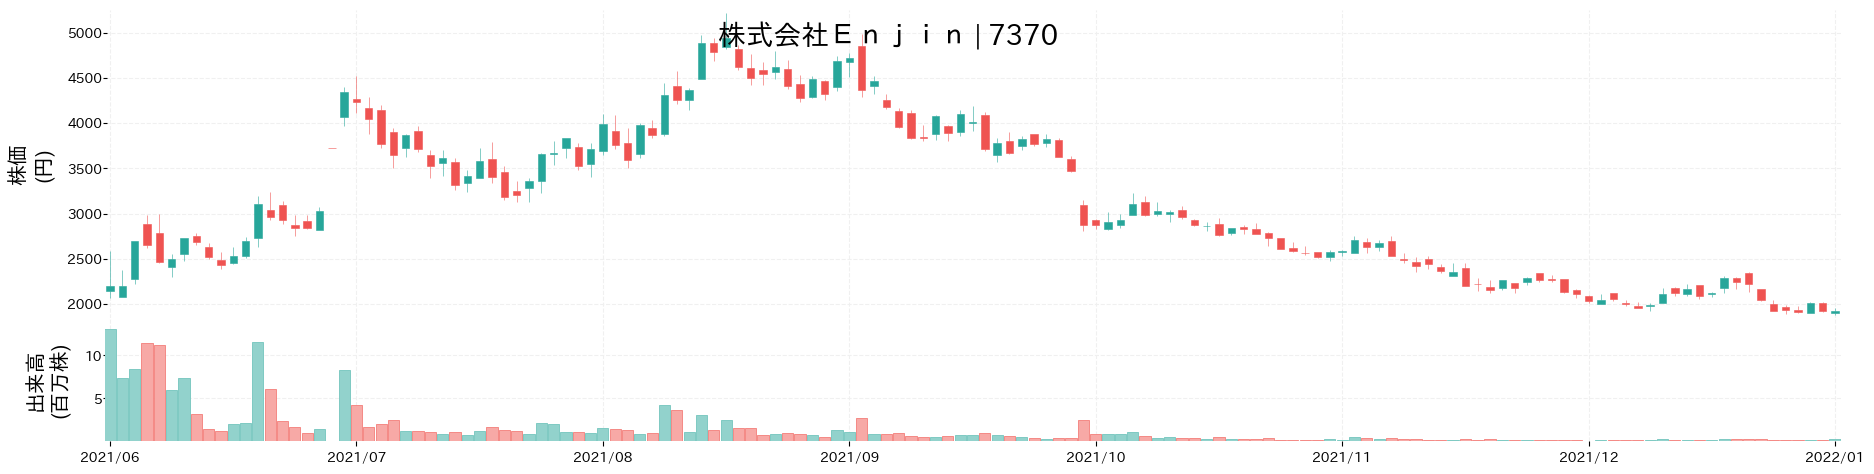 Enjinの株価推移(2021)